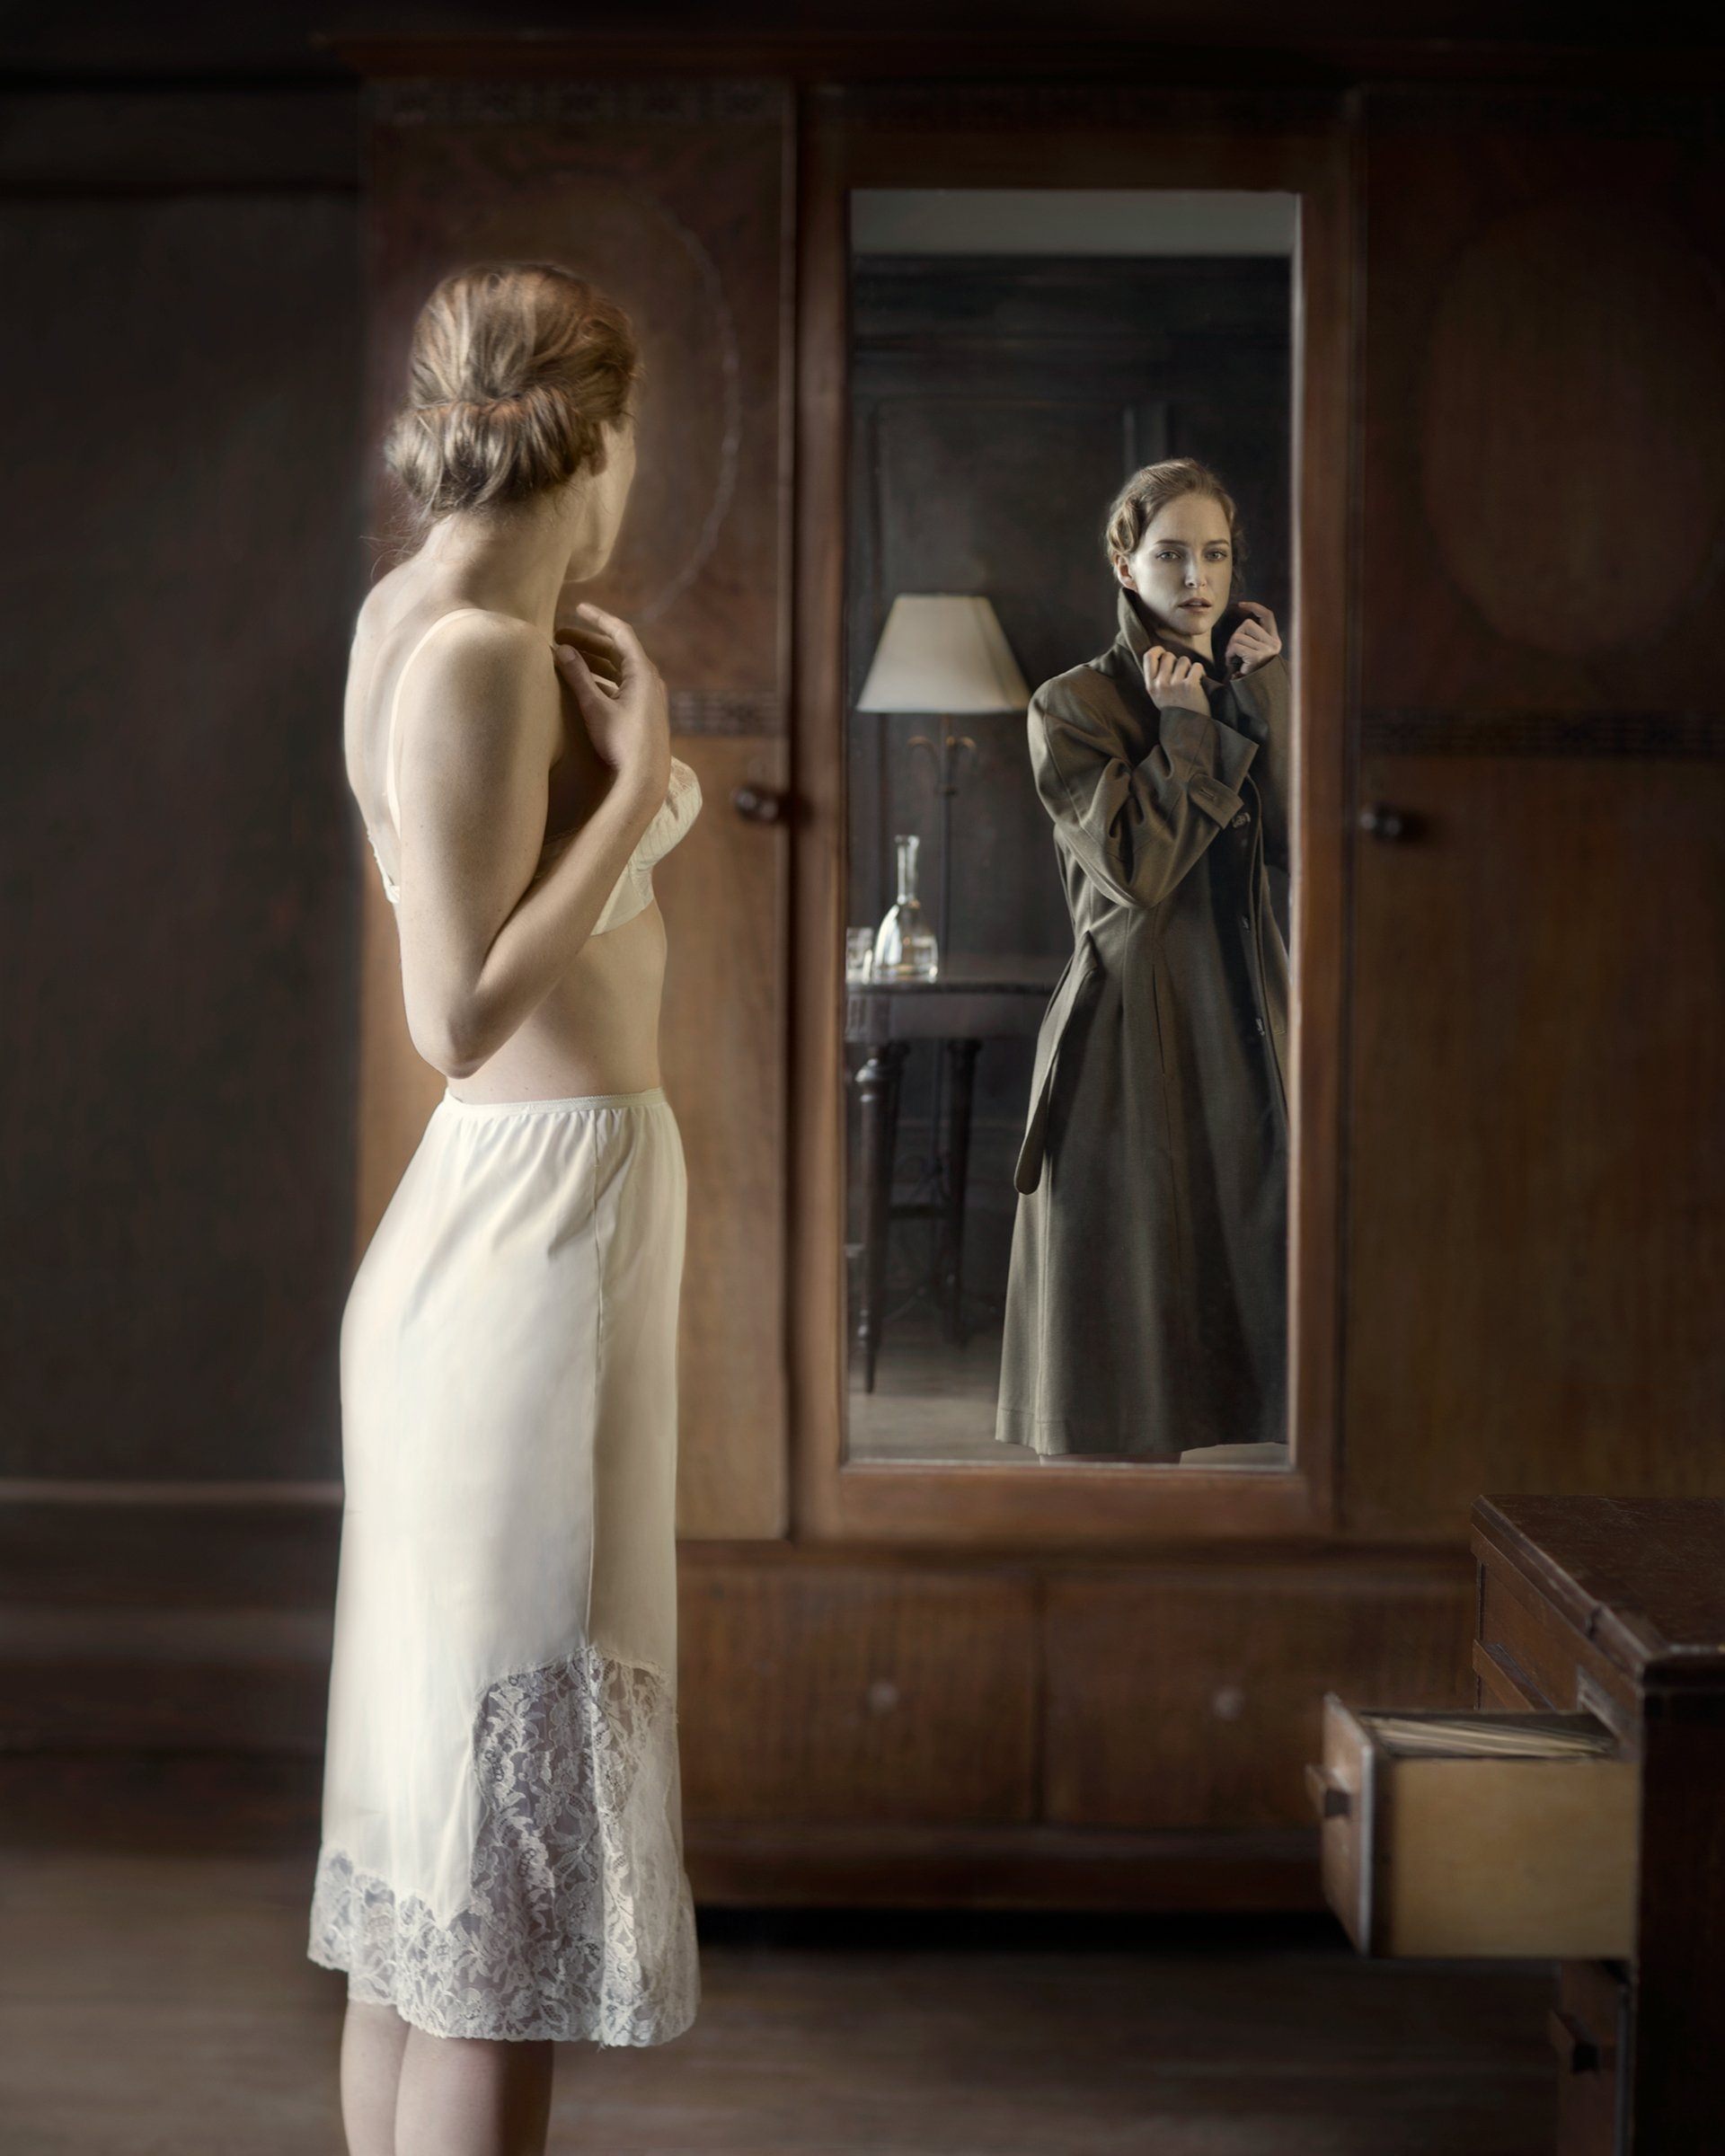 Женщина в зеркале роли. («Отражение в зеркале», 1840. Девушка в зеркале.